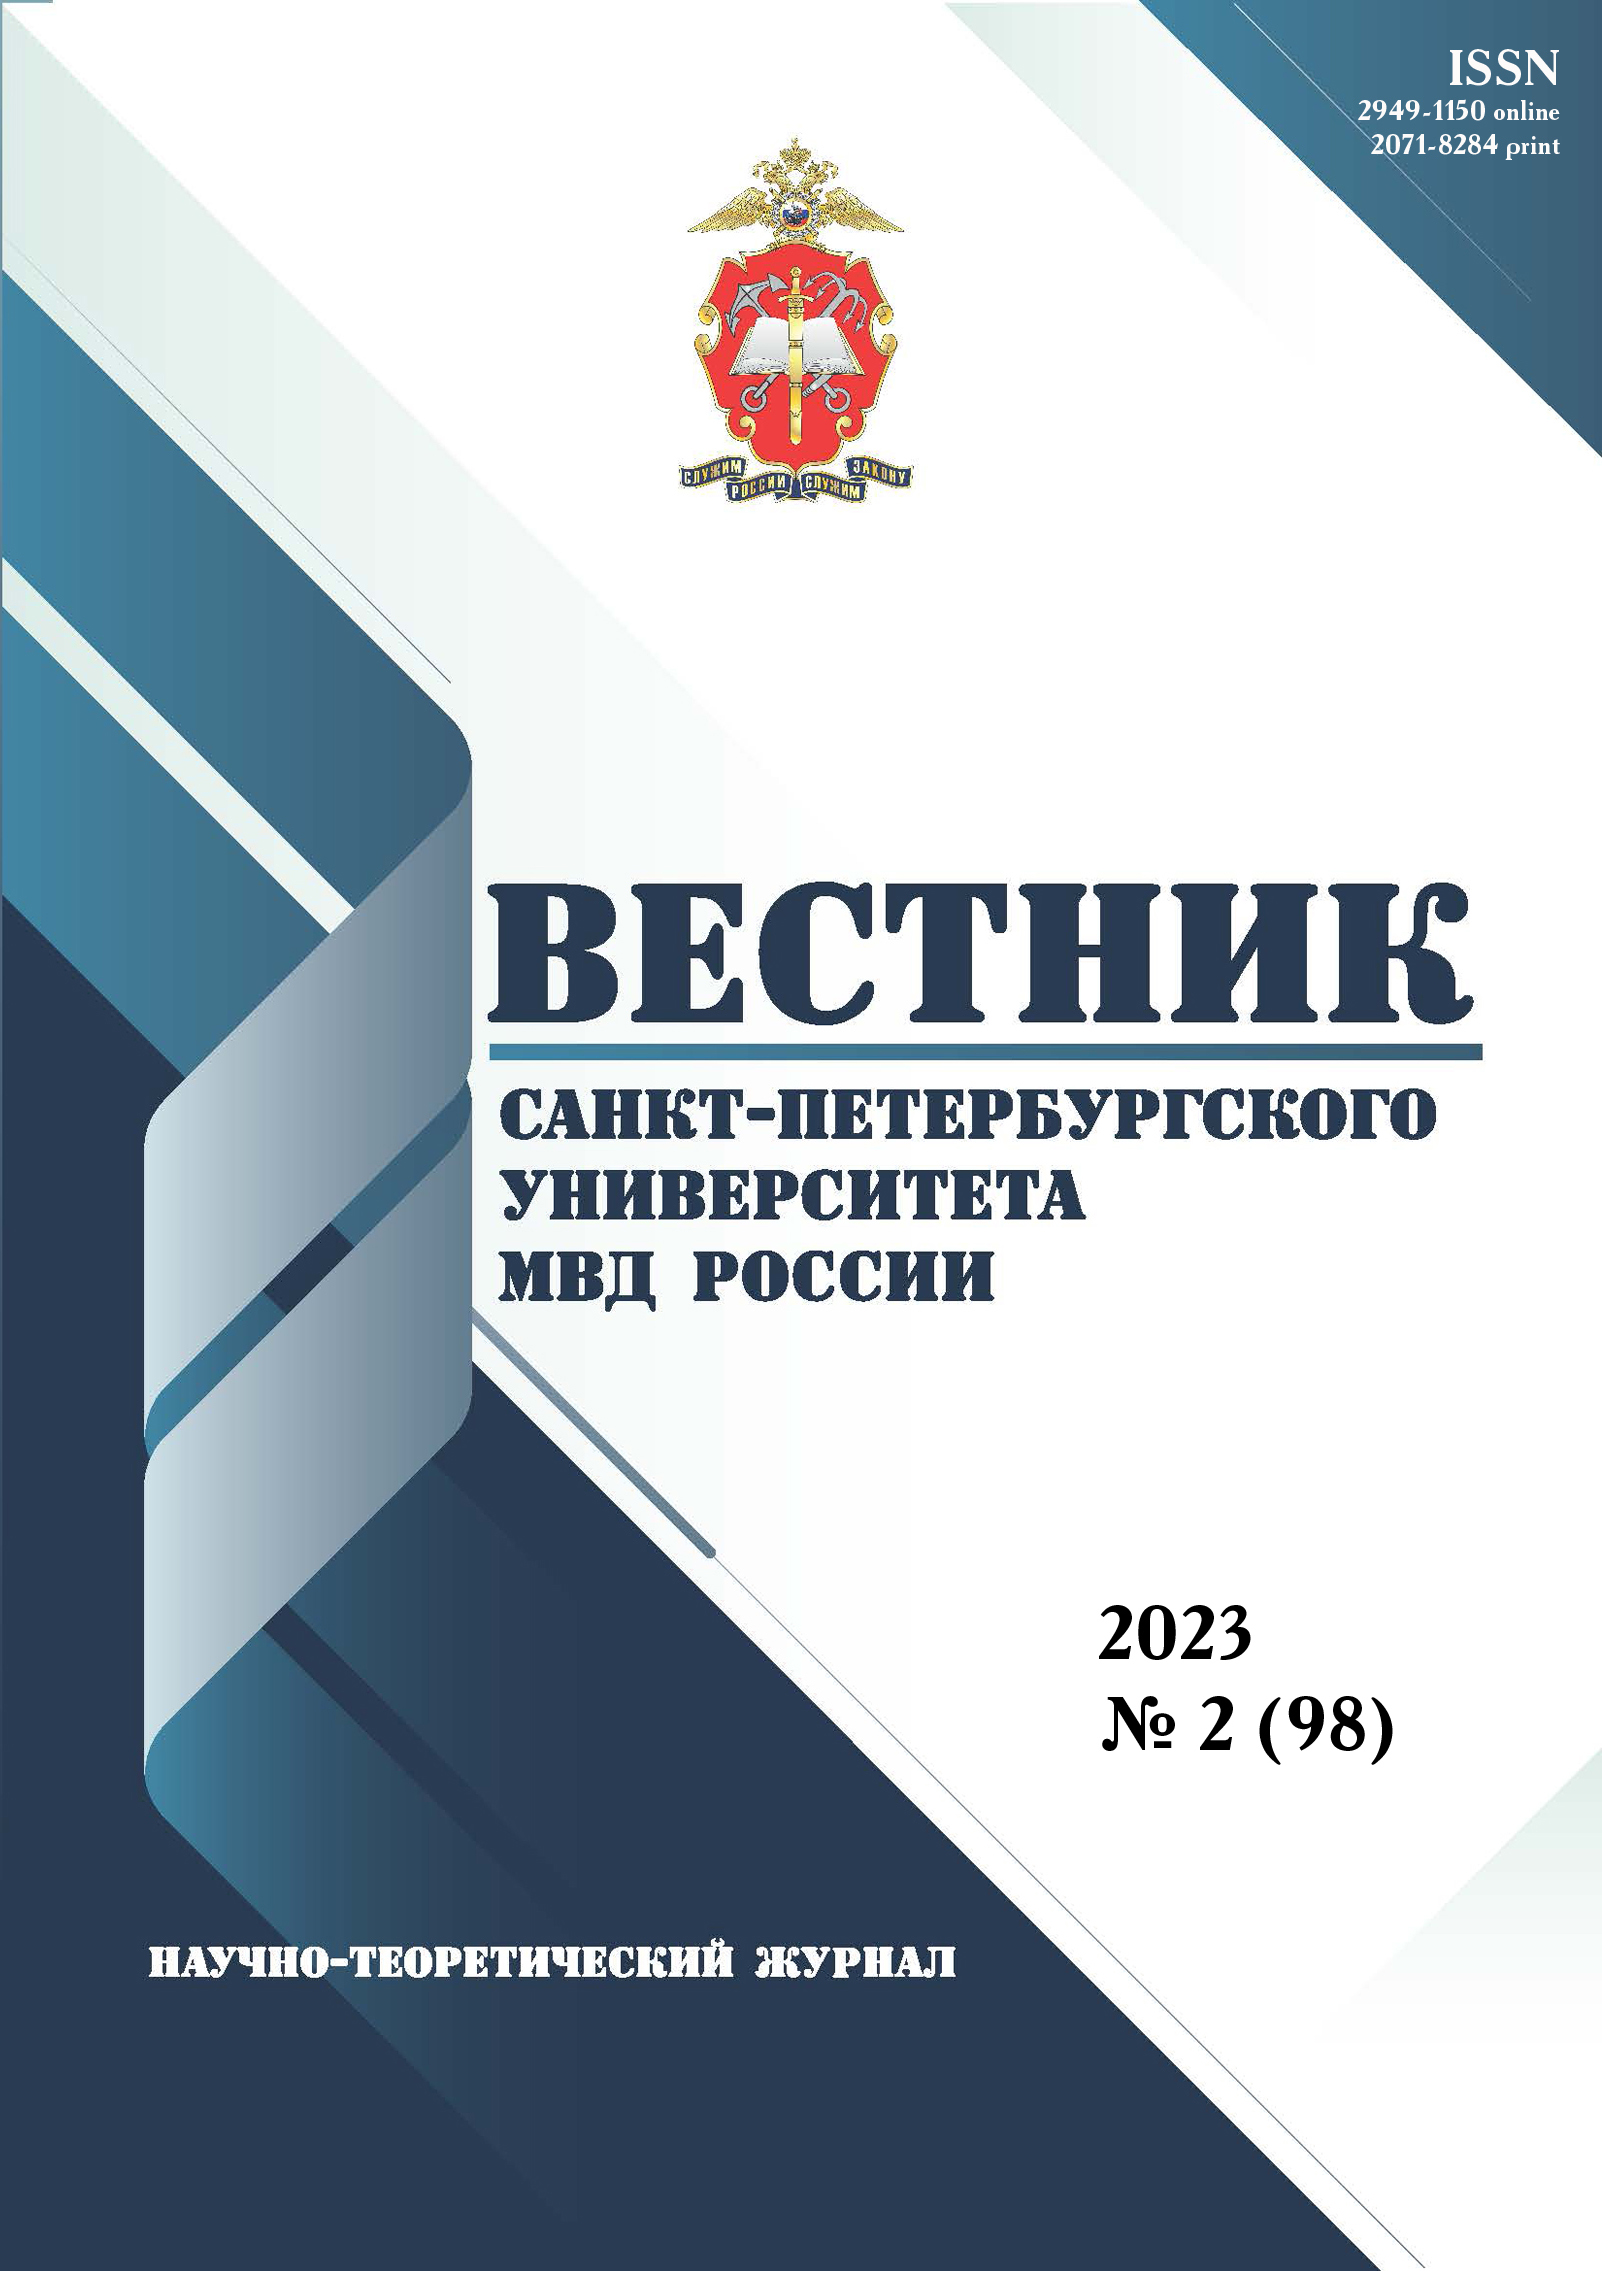             Исследование уровня двигательной активности курсантов образовательных организаций МВД России на первоначальном этапе подготовки
    